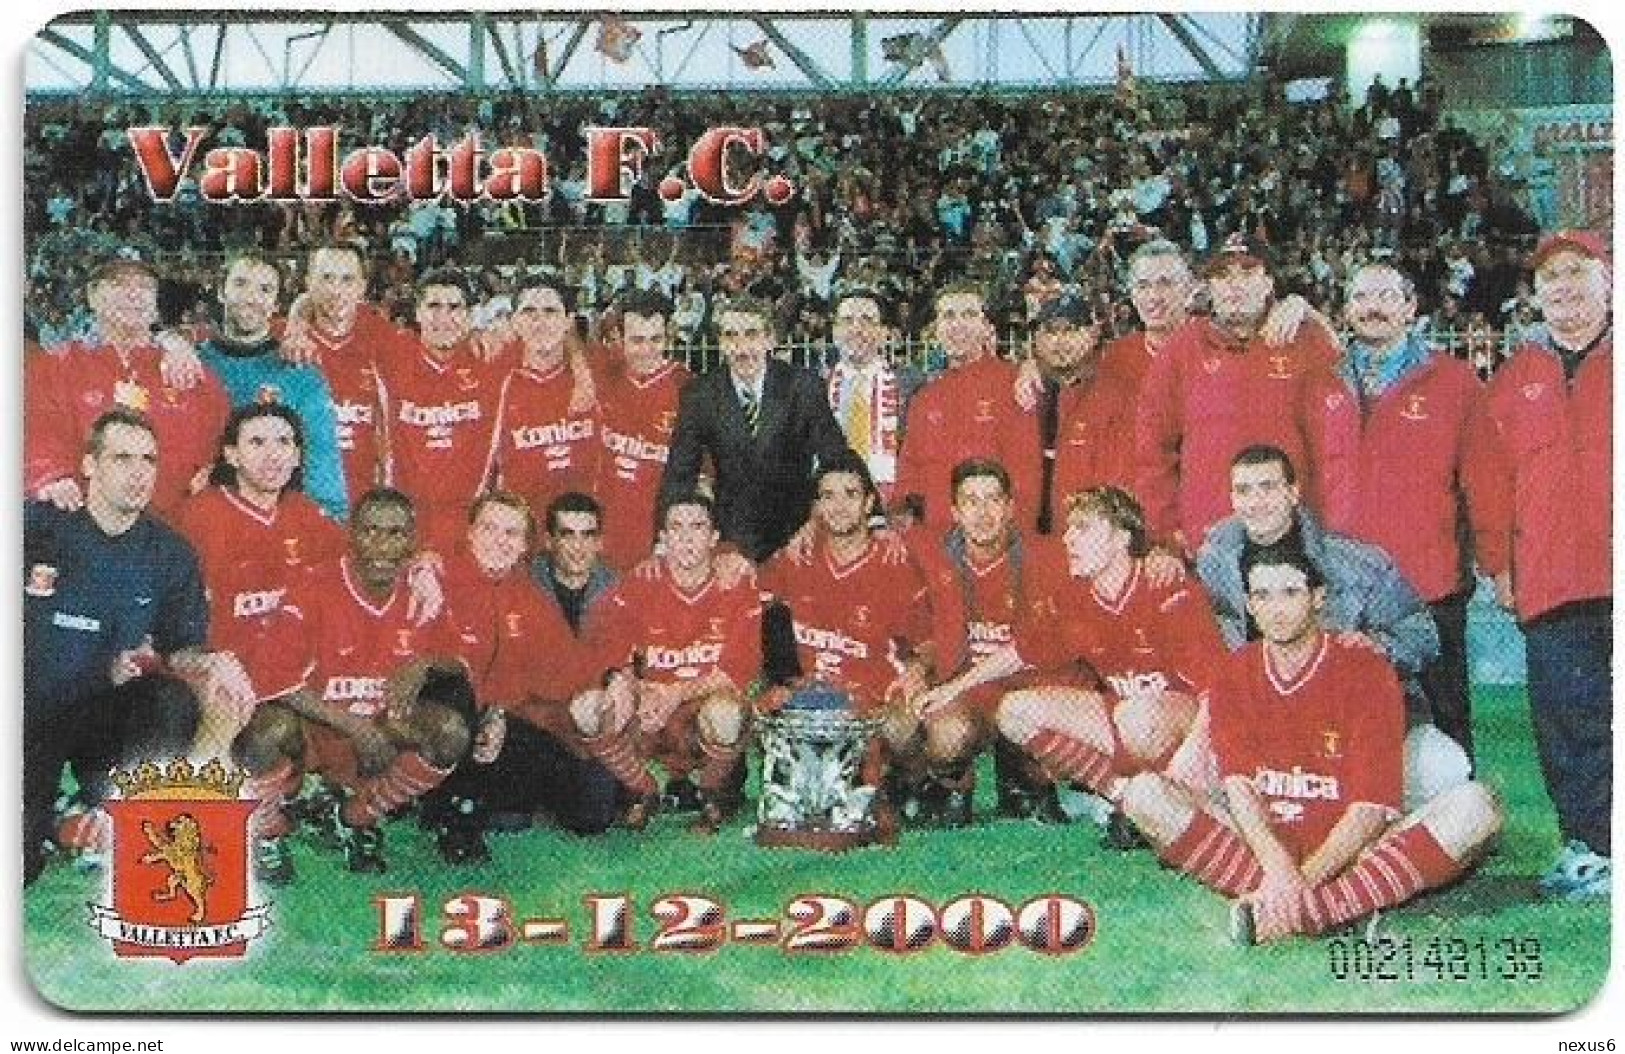 Malta - Maltacom - Valletta Football Club - 04.2001, 38U, 20.000ex, Used - Malte